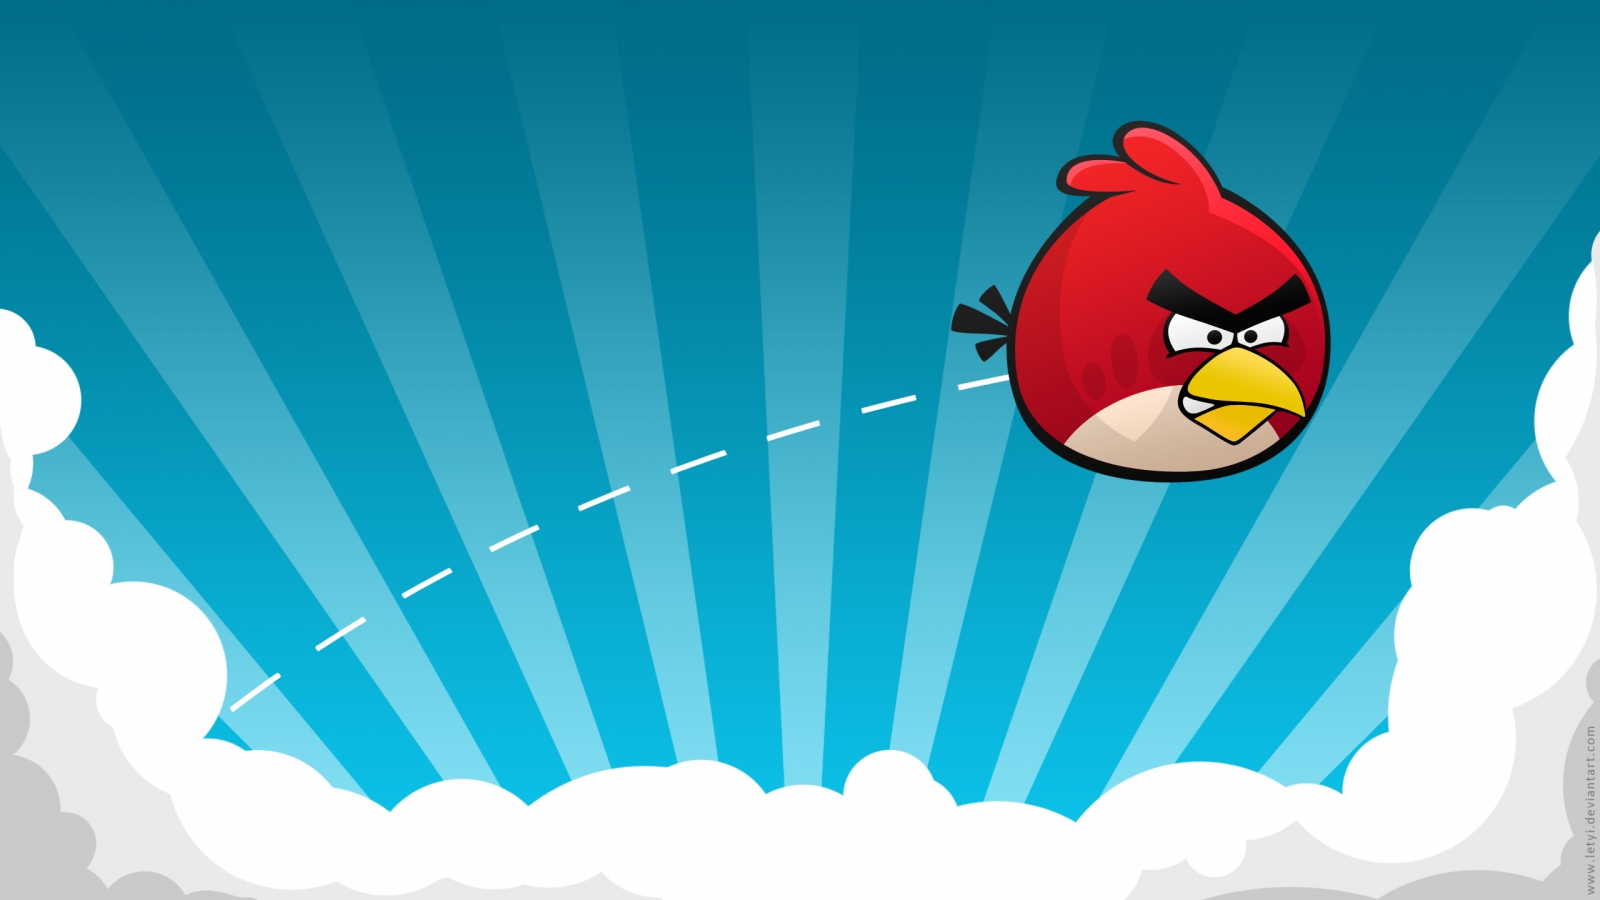 http://3.bp.blogspot.com/-Mngnxr6fSp0/T6eYiThMjOI/AAAAAAAABOI/7GxTlqGXzTQ/s1600/angry-birds-powerpoint-background-7.jpg